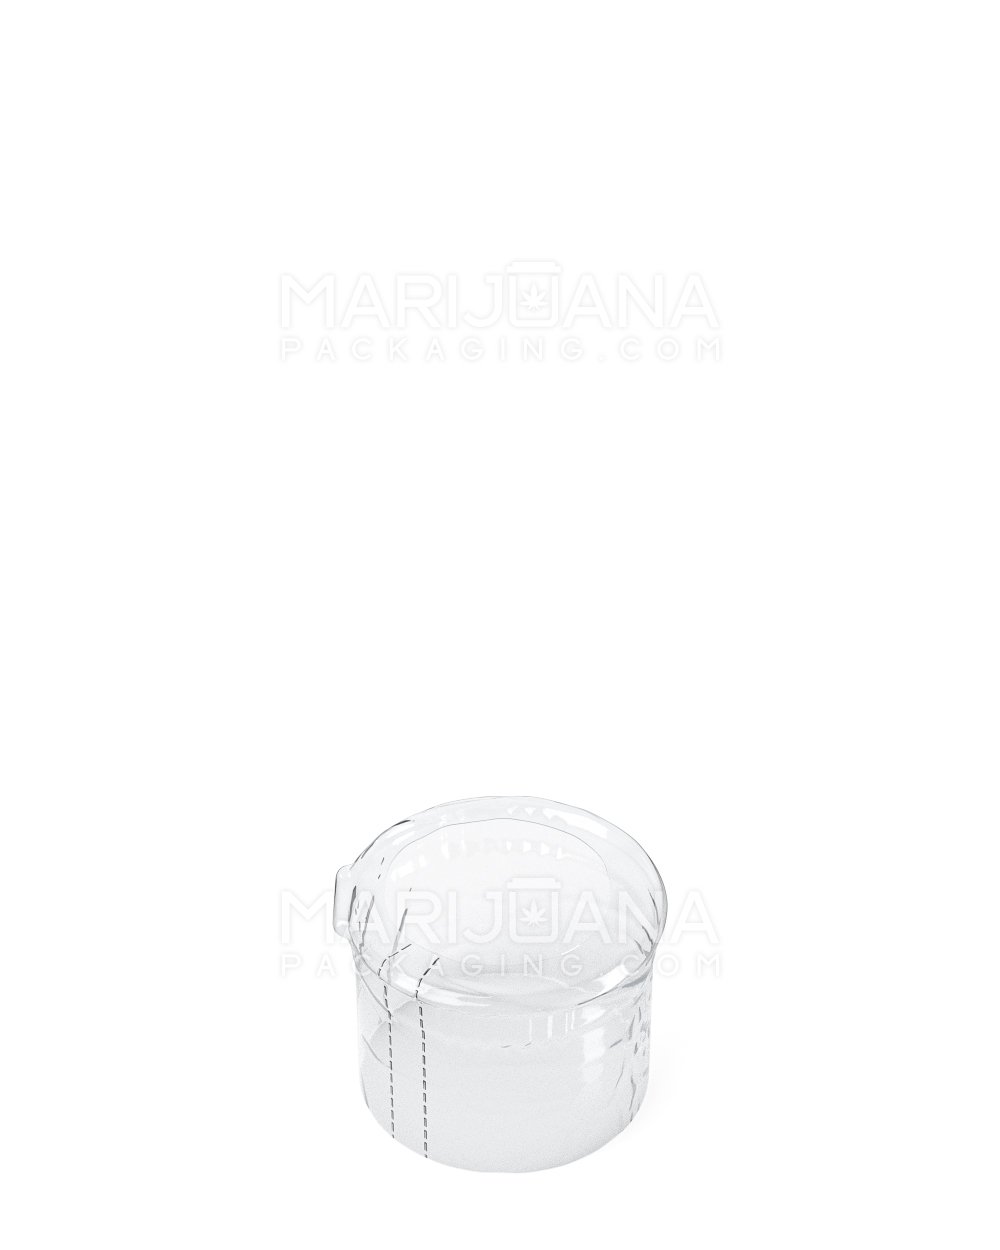 Tamper Evident | Heat Shrink Bands for Pop Top Bottles | 13dr- Clear Plastic - 1000 Count - 1